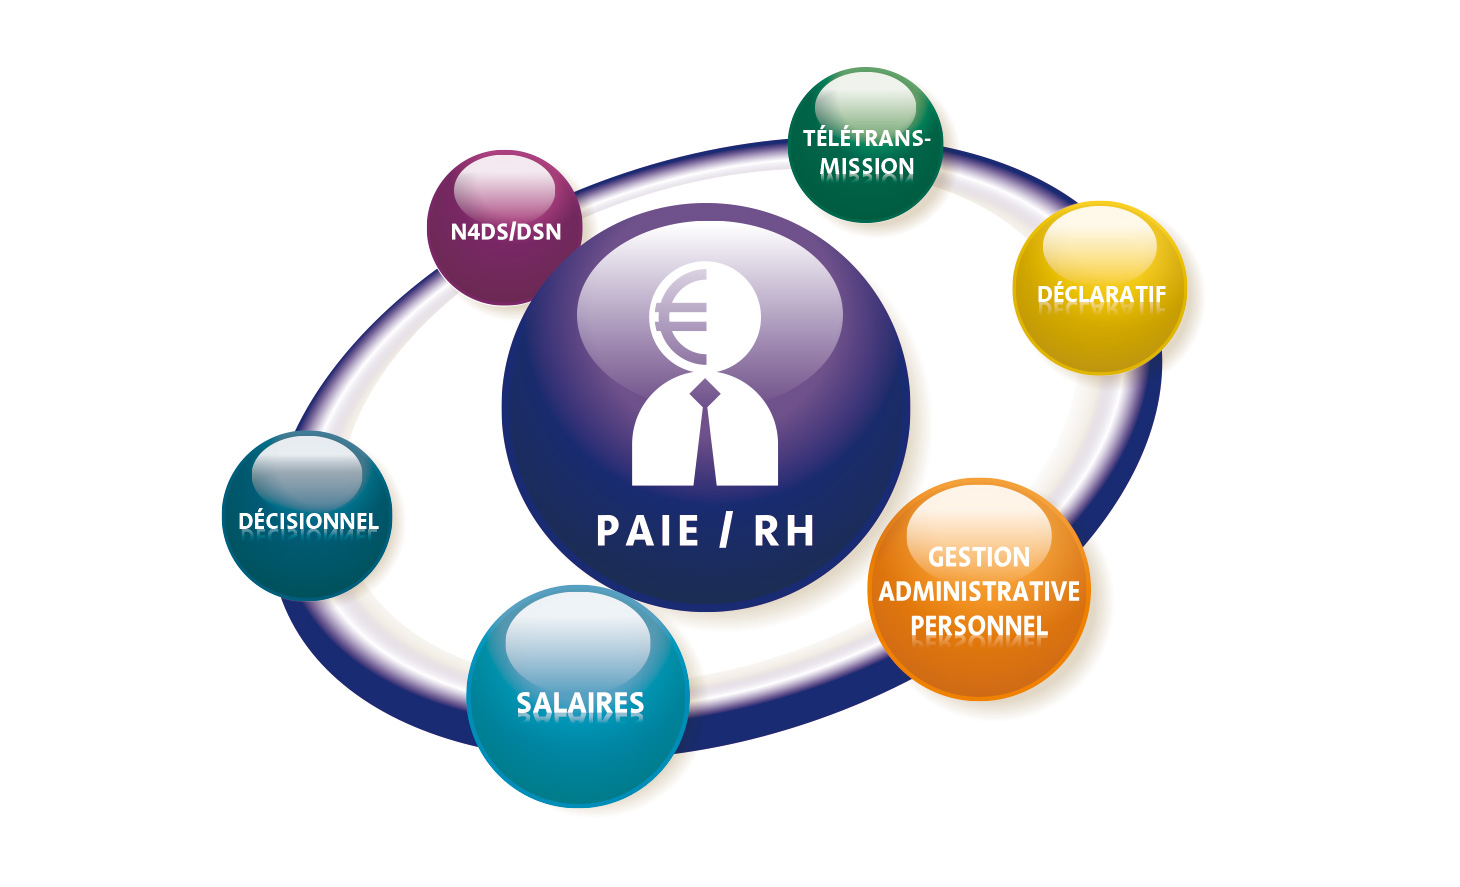 INTEGRAAL PAIE et RH, le logiciel de la paie et des ressources humaines